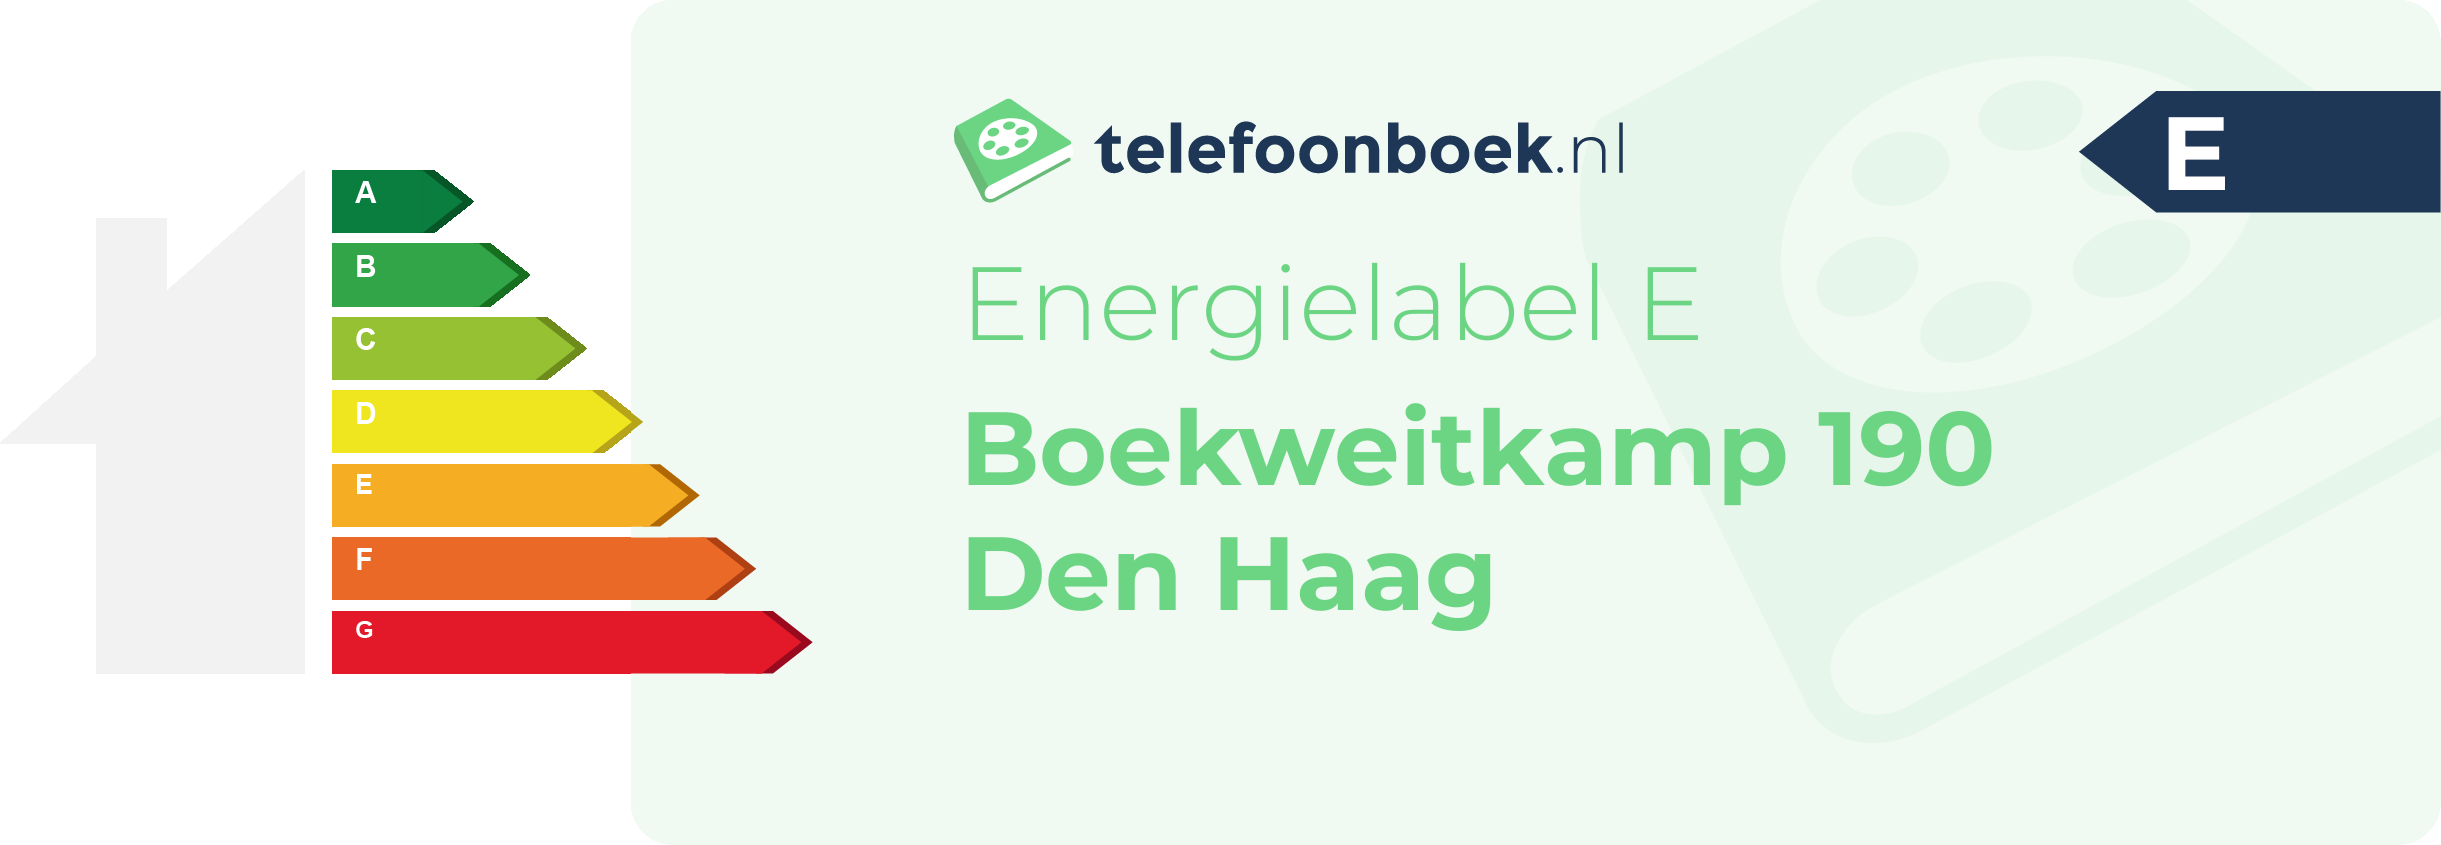 Energielabel Boekweitkamp 190 Den Haag